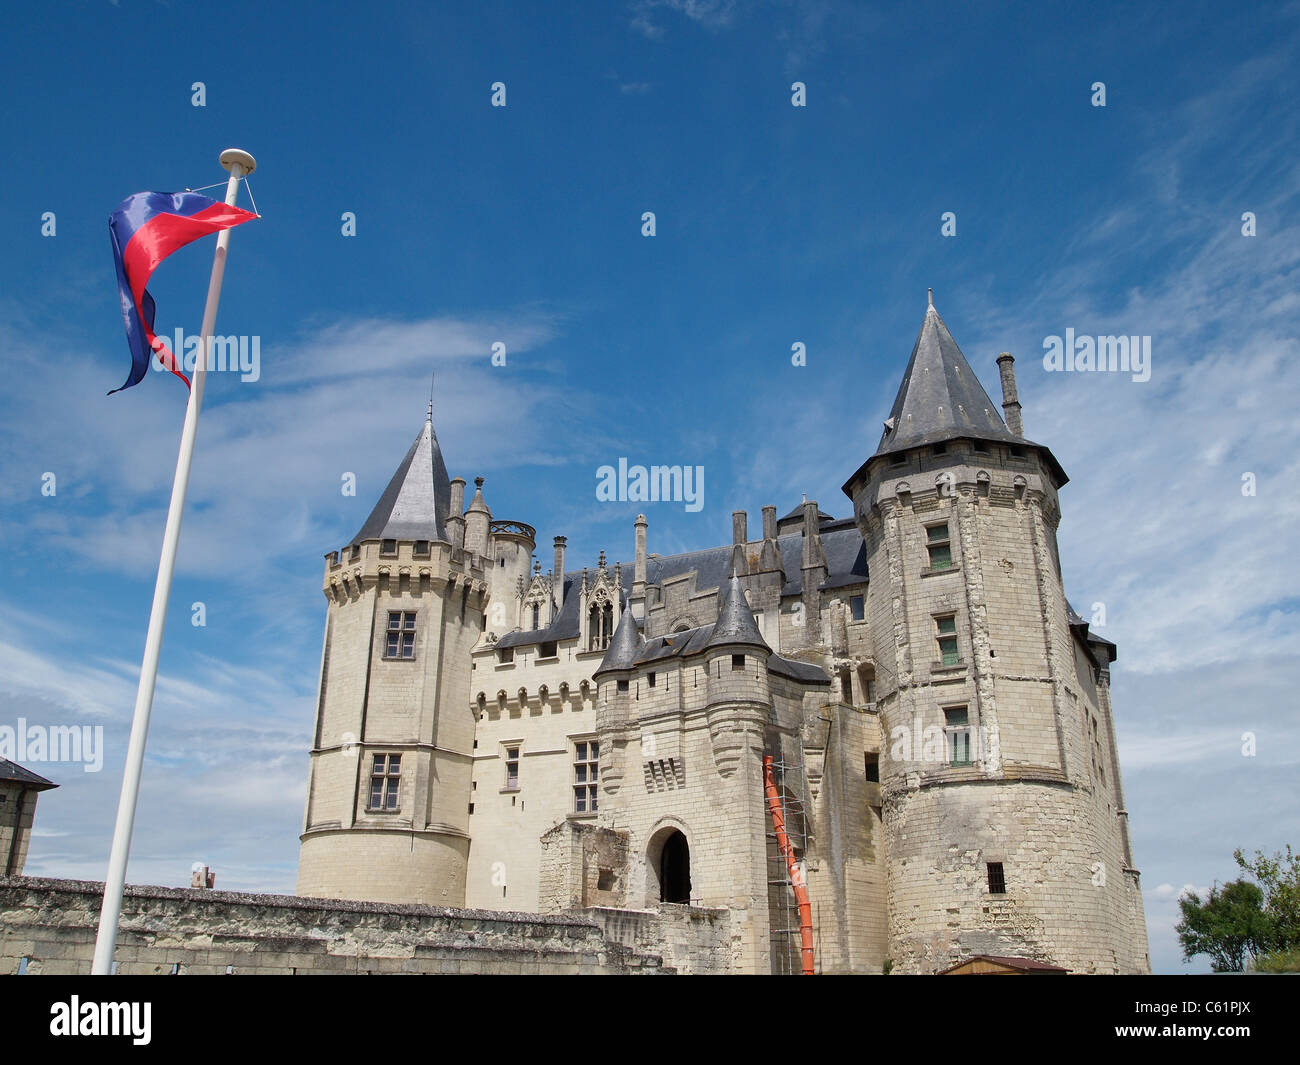 Chateau de Saumur castle, Loire valley, France Stock Photo